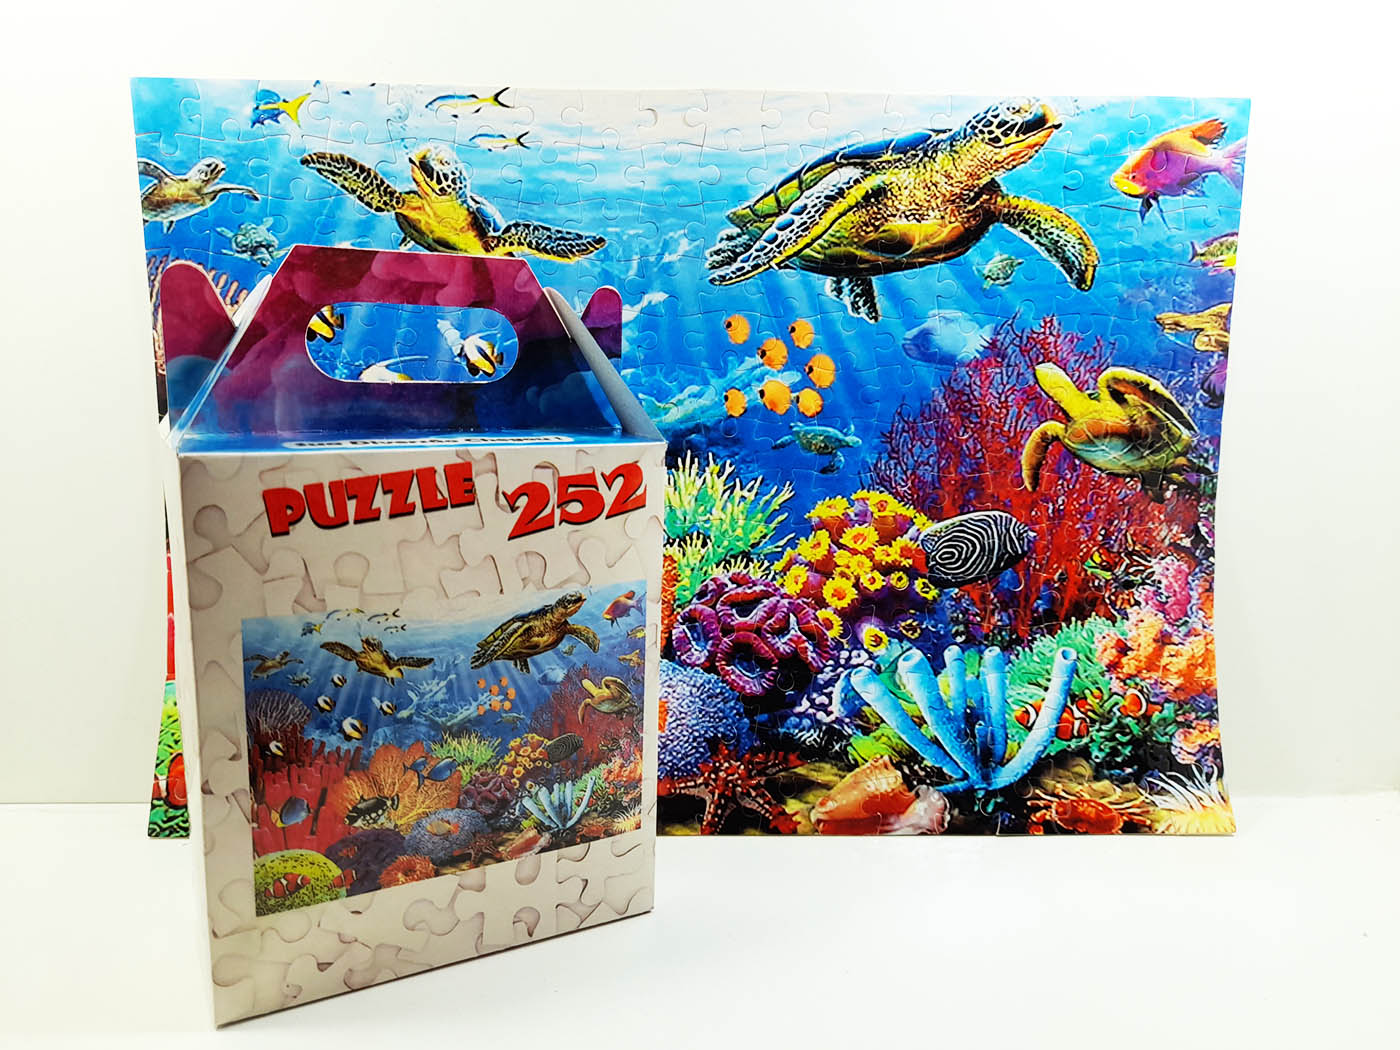 Quebra-cabeça Puzzle Fundo do Mar de 252 peças